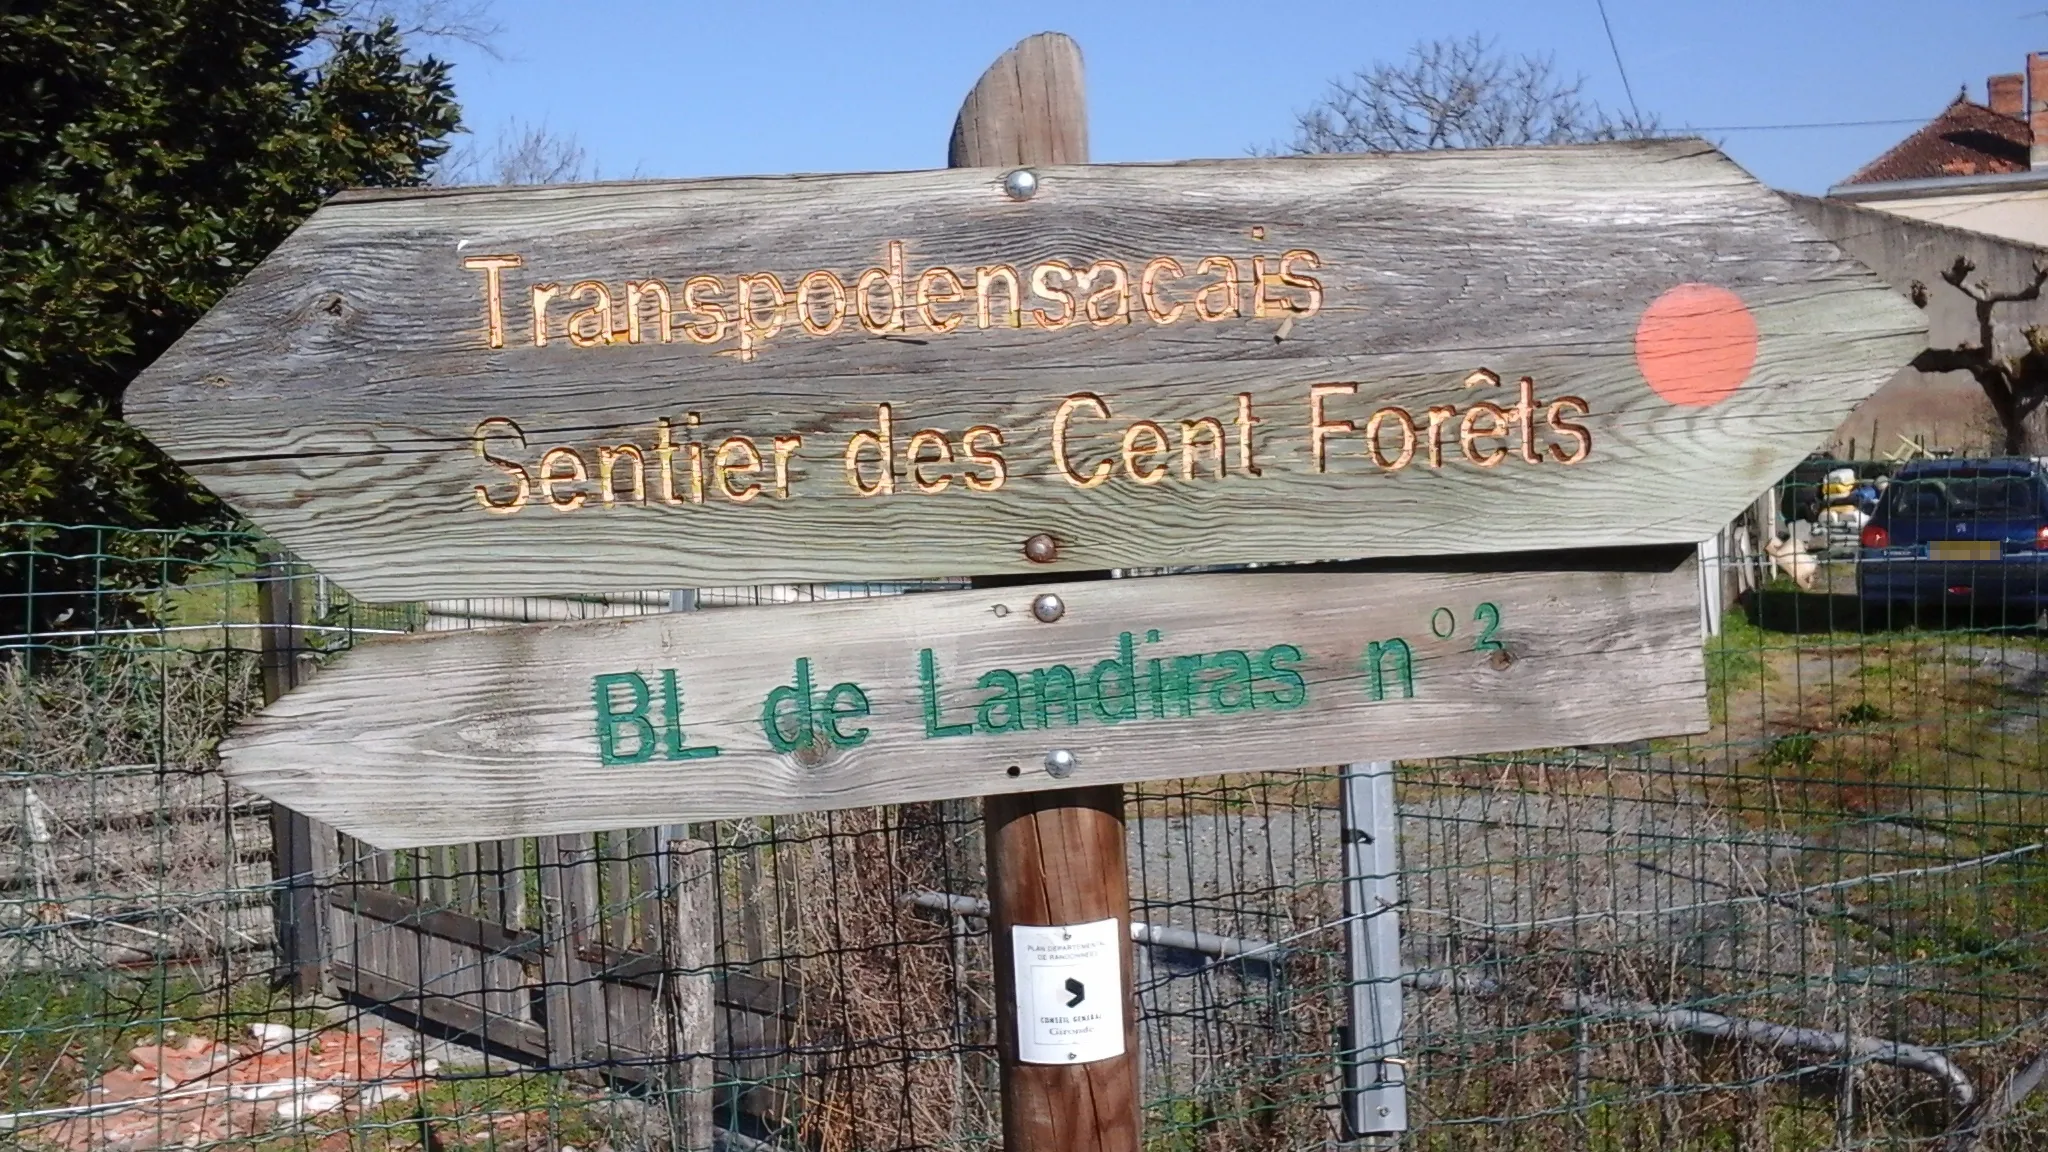 Photo showing: Transpodensacais, Sentier des Cent Forêts; BL de Landiras nº 2